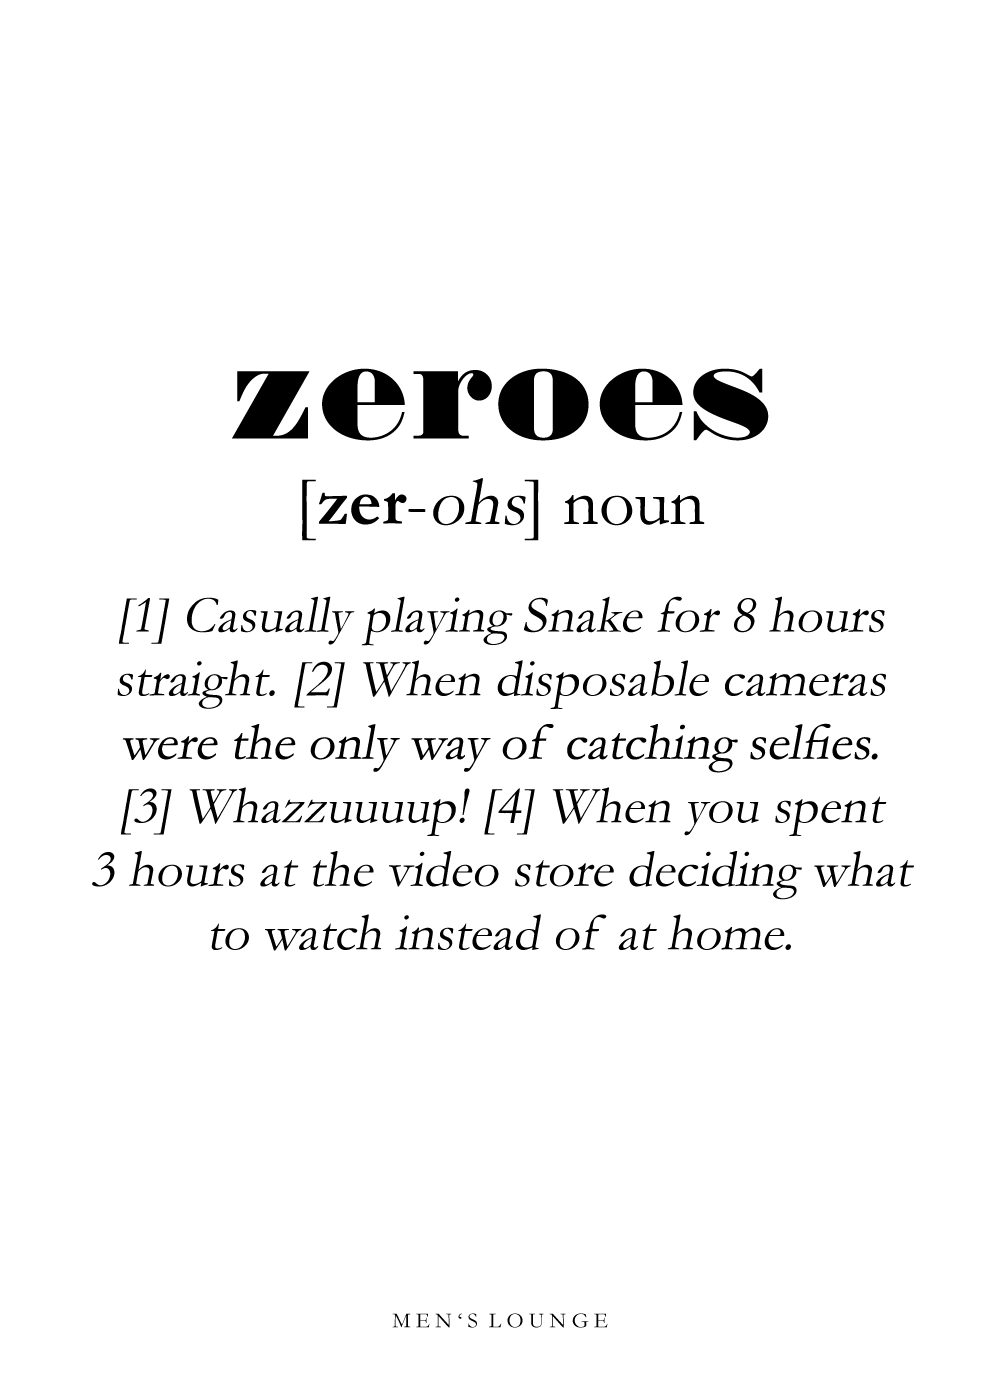 Zeroes definition - Men's Lounge plakat